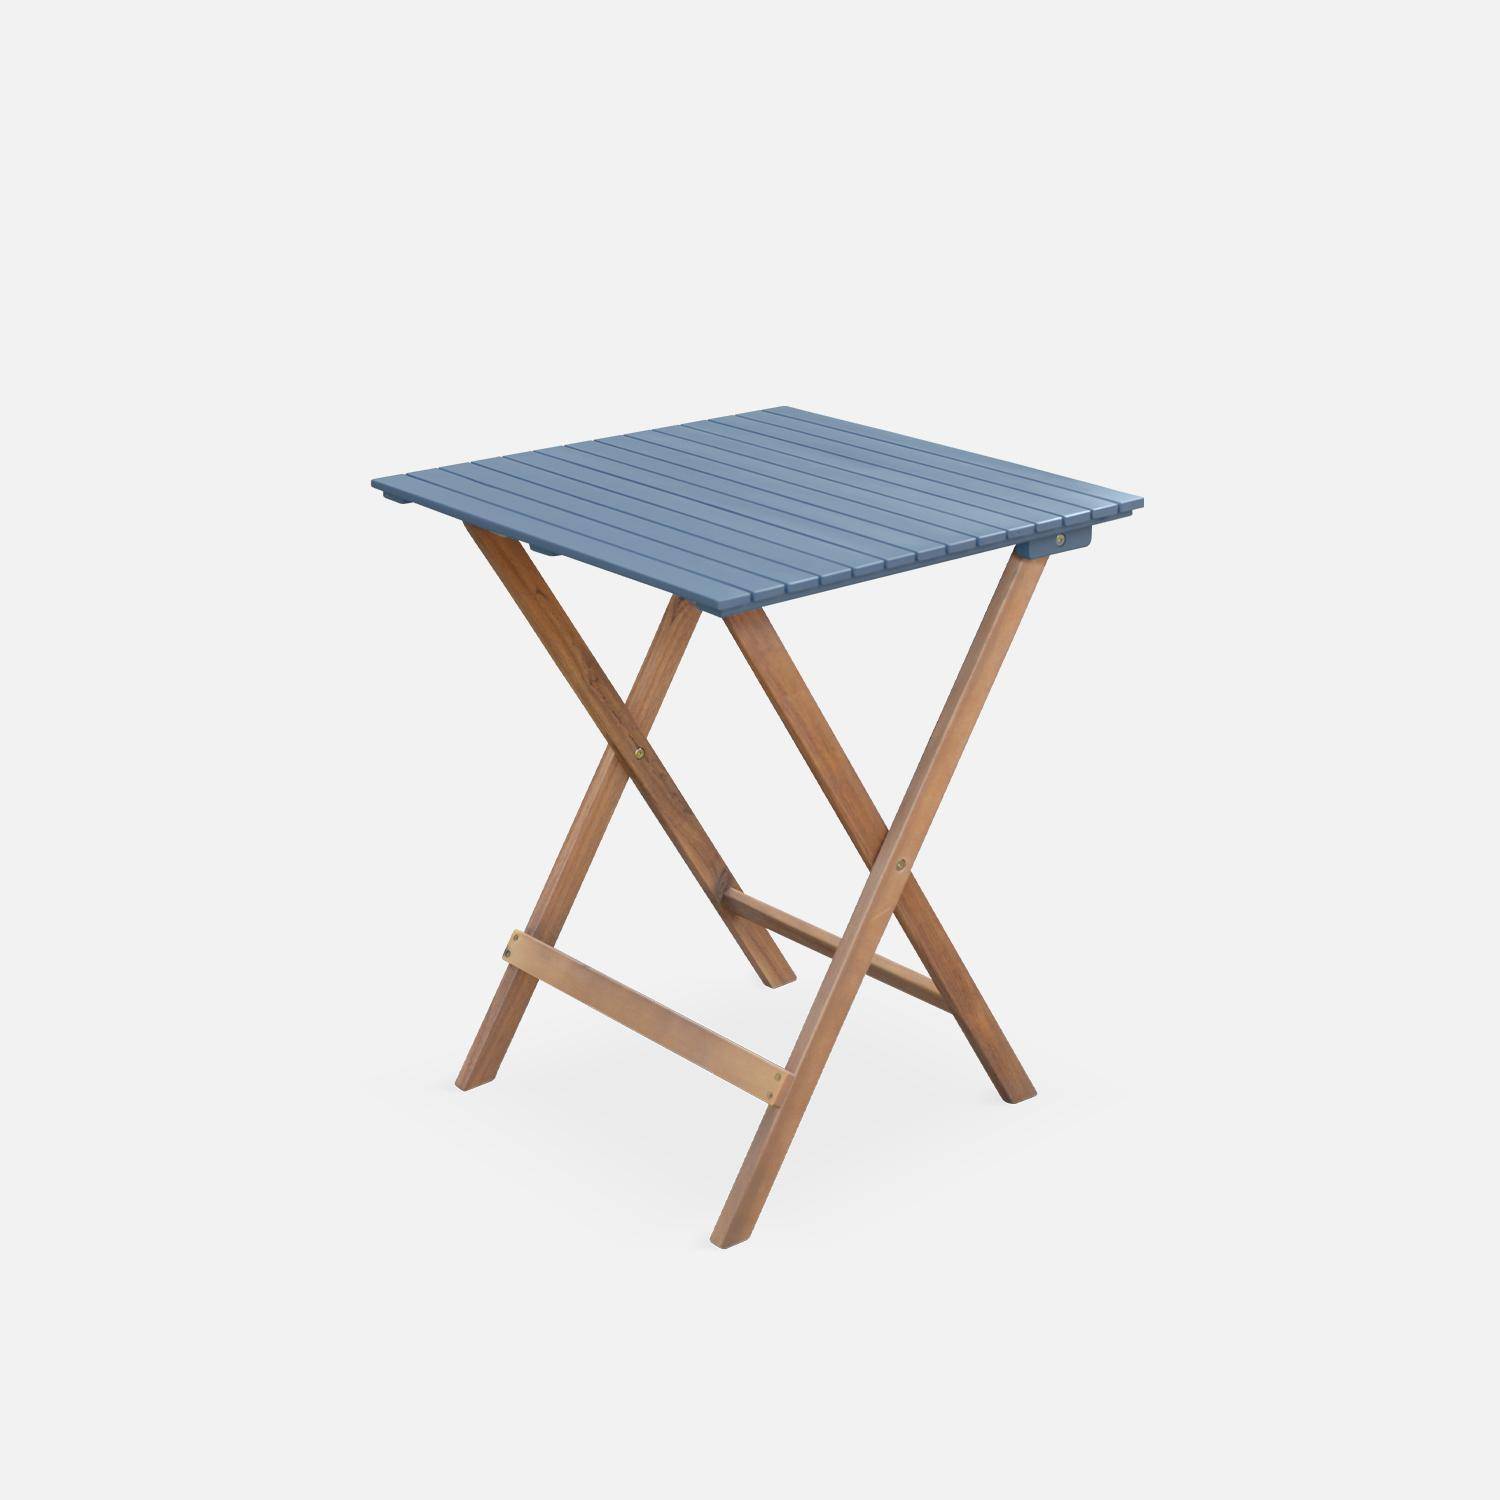 Conjunto de jardín de madera Bistro 60x60cm - Barcelona - azul grisáceo, mesa plegable cuadrada bicolor con 2 sillas plegables, acacia Photo6